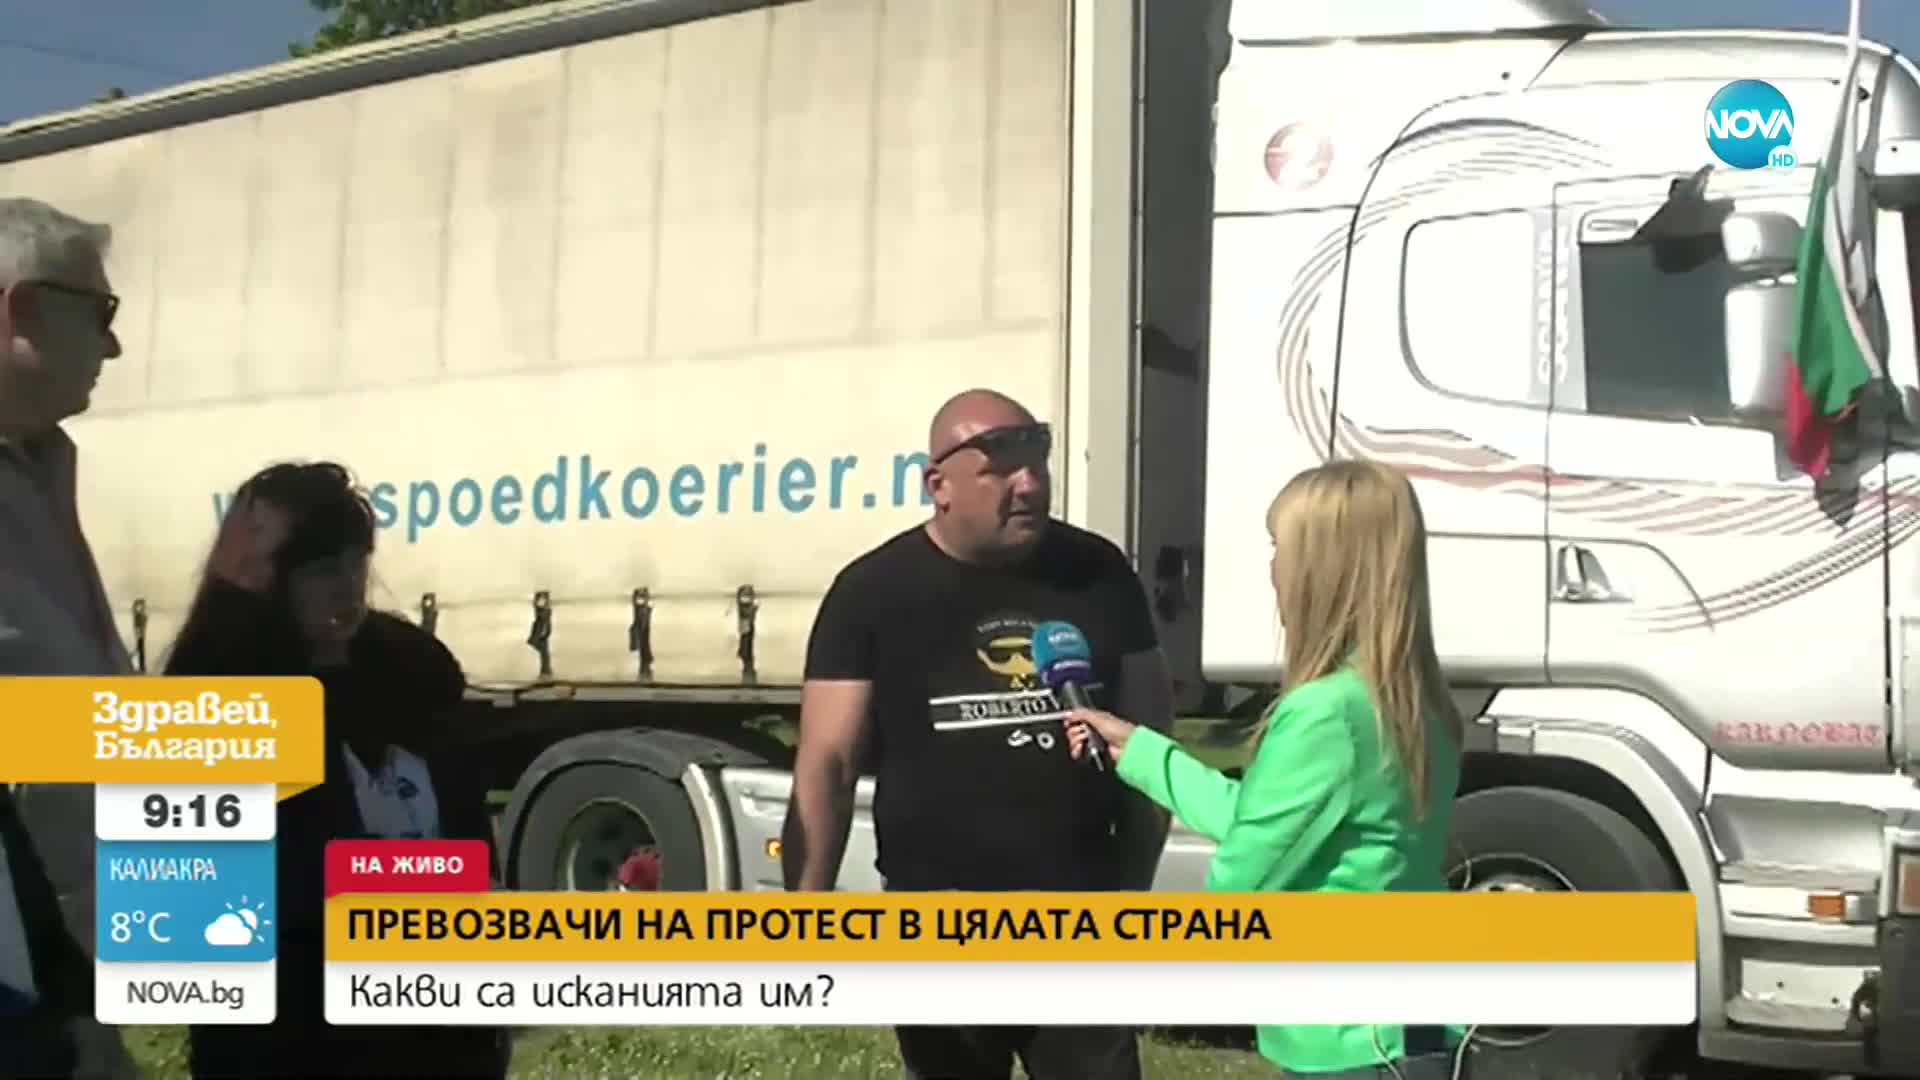 Превозвачите излязоха на национален протест, камиони блокираха центъра на София